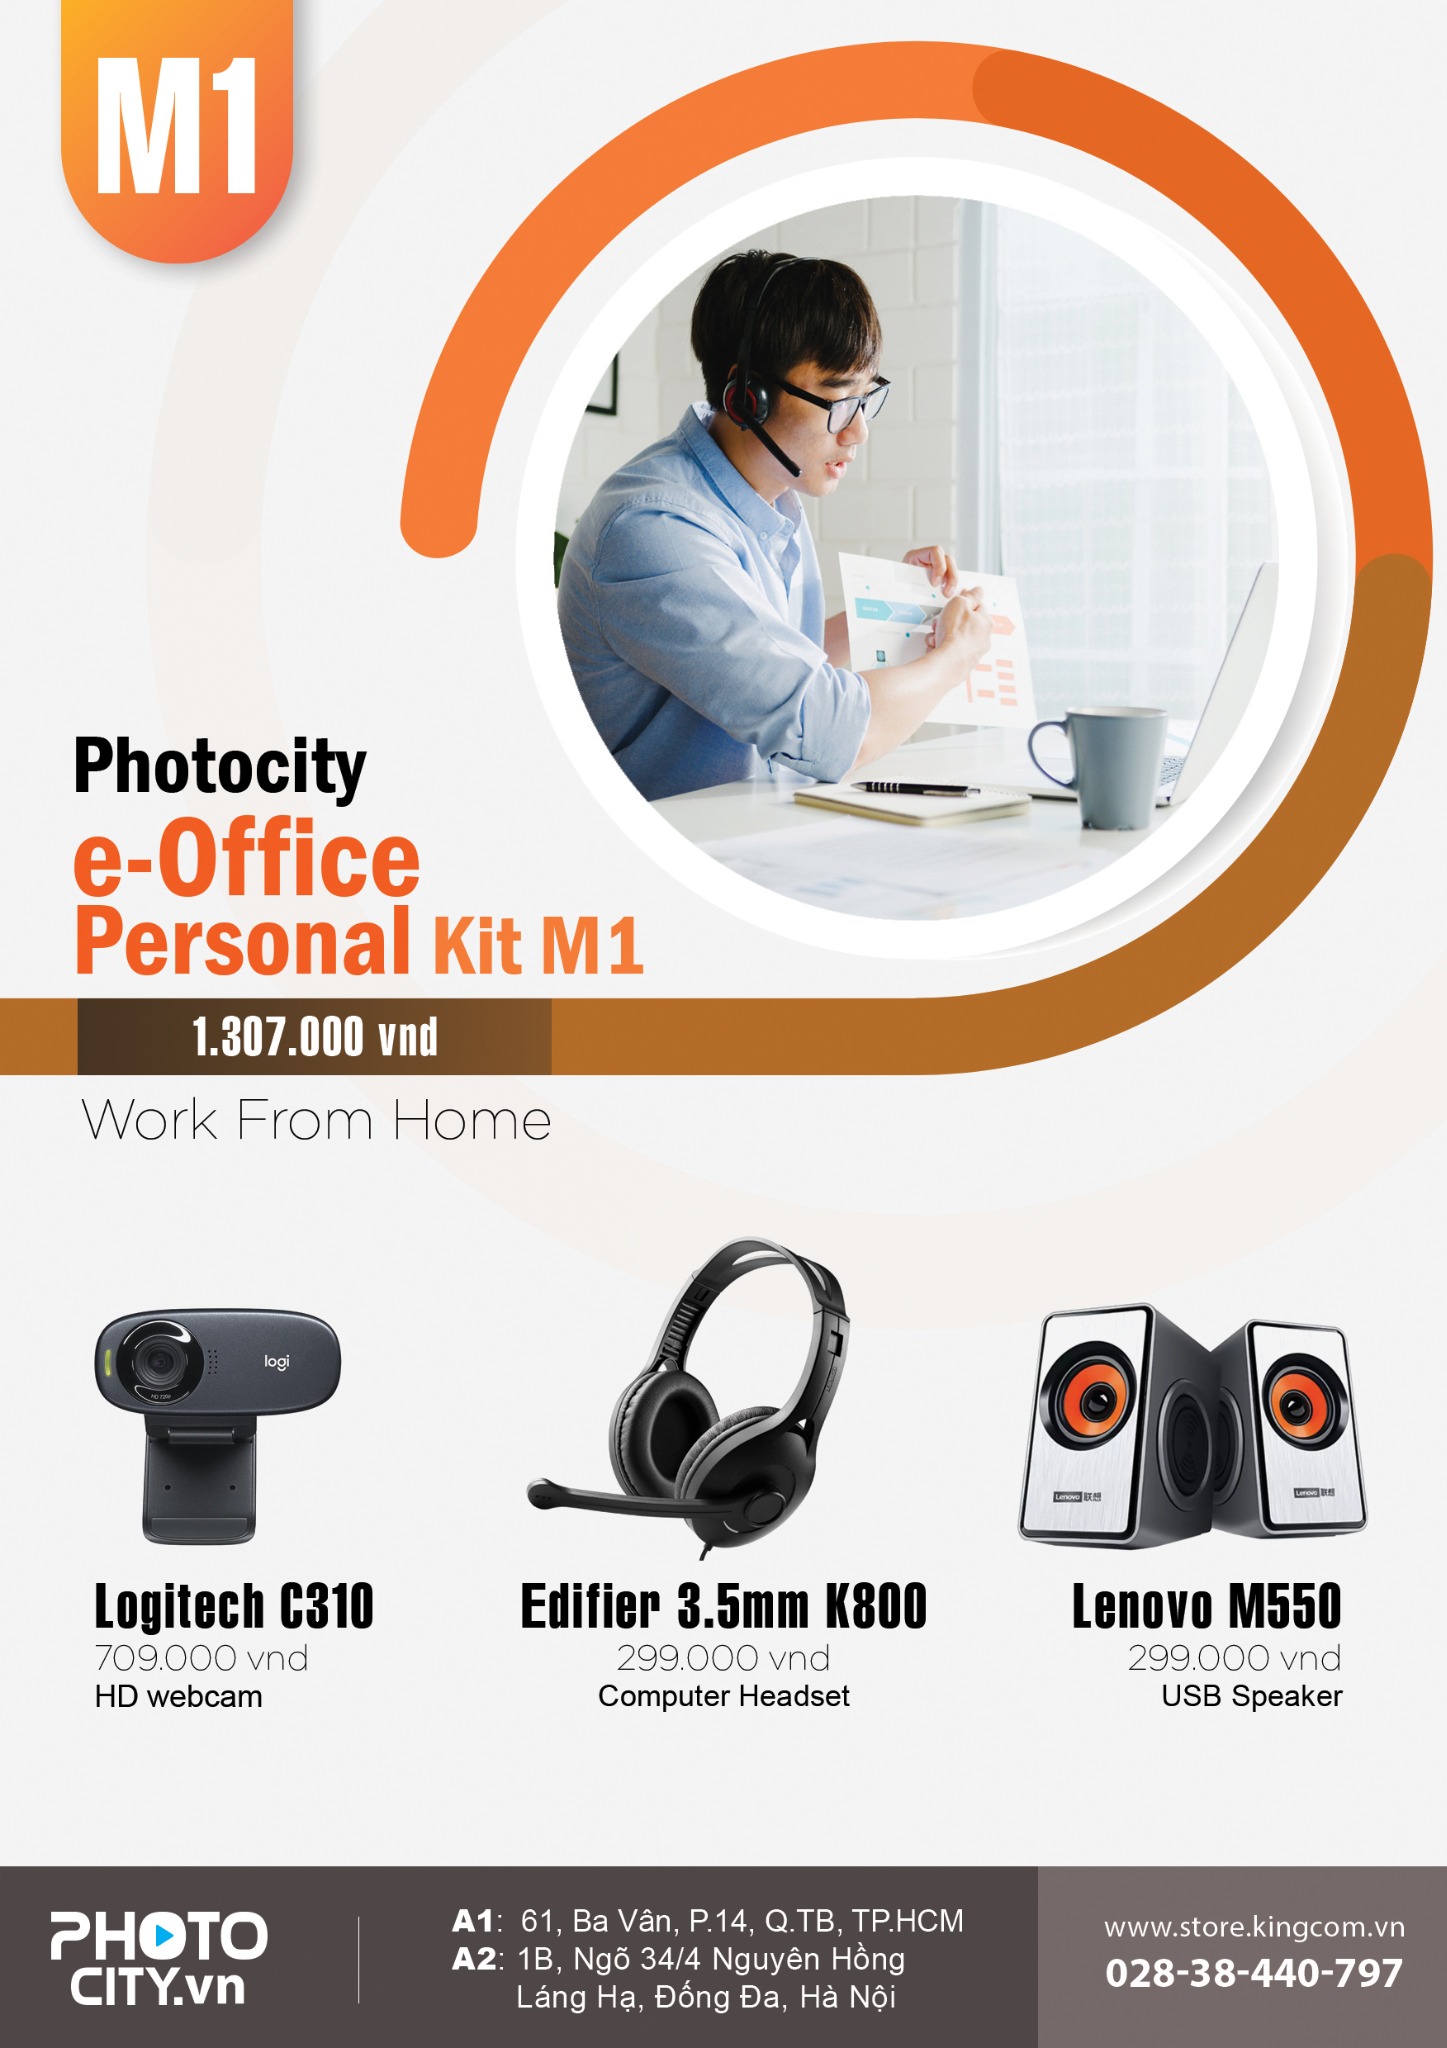 PhotoCity e-Office personal Kit M1 ( Bộ dụng cụ hỗ trợ làm việc online tại nhà)